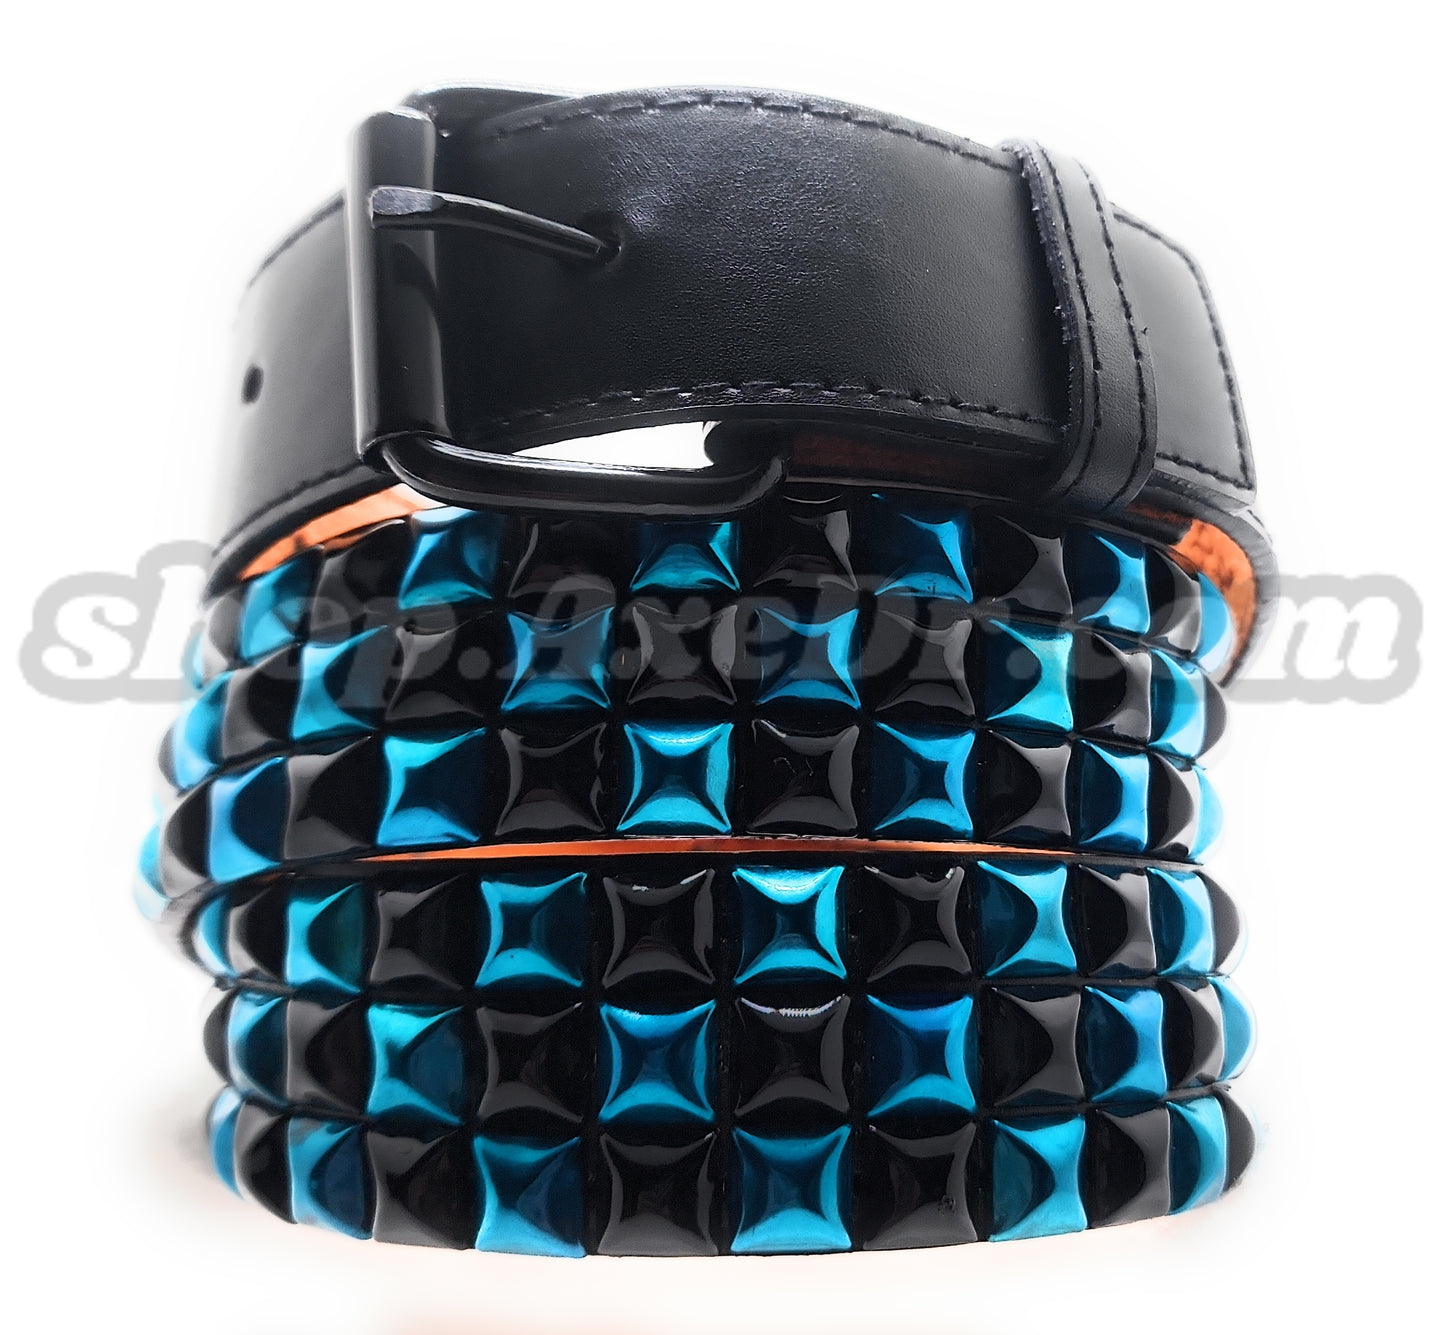 Punk cinturón de cuero con tachuelas de pirámide morada y negra